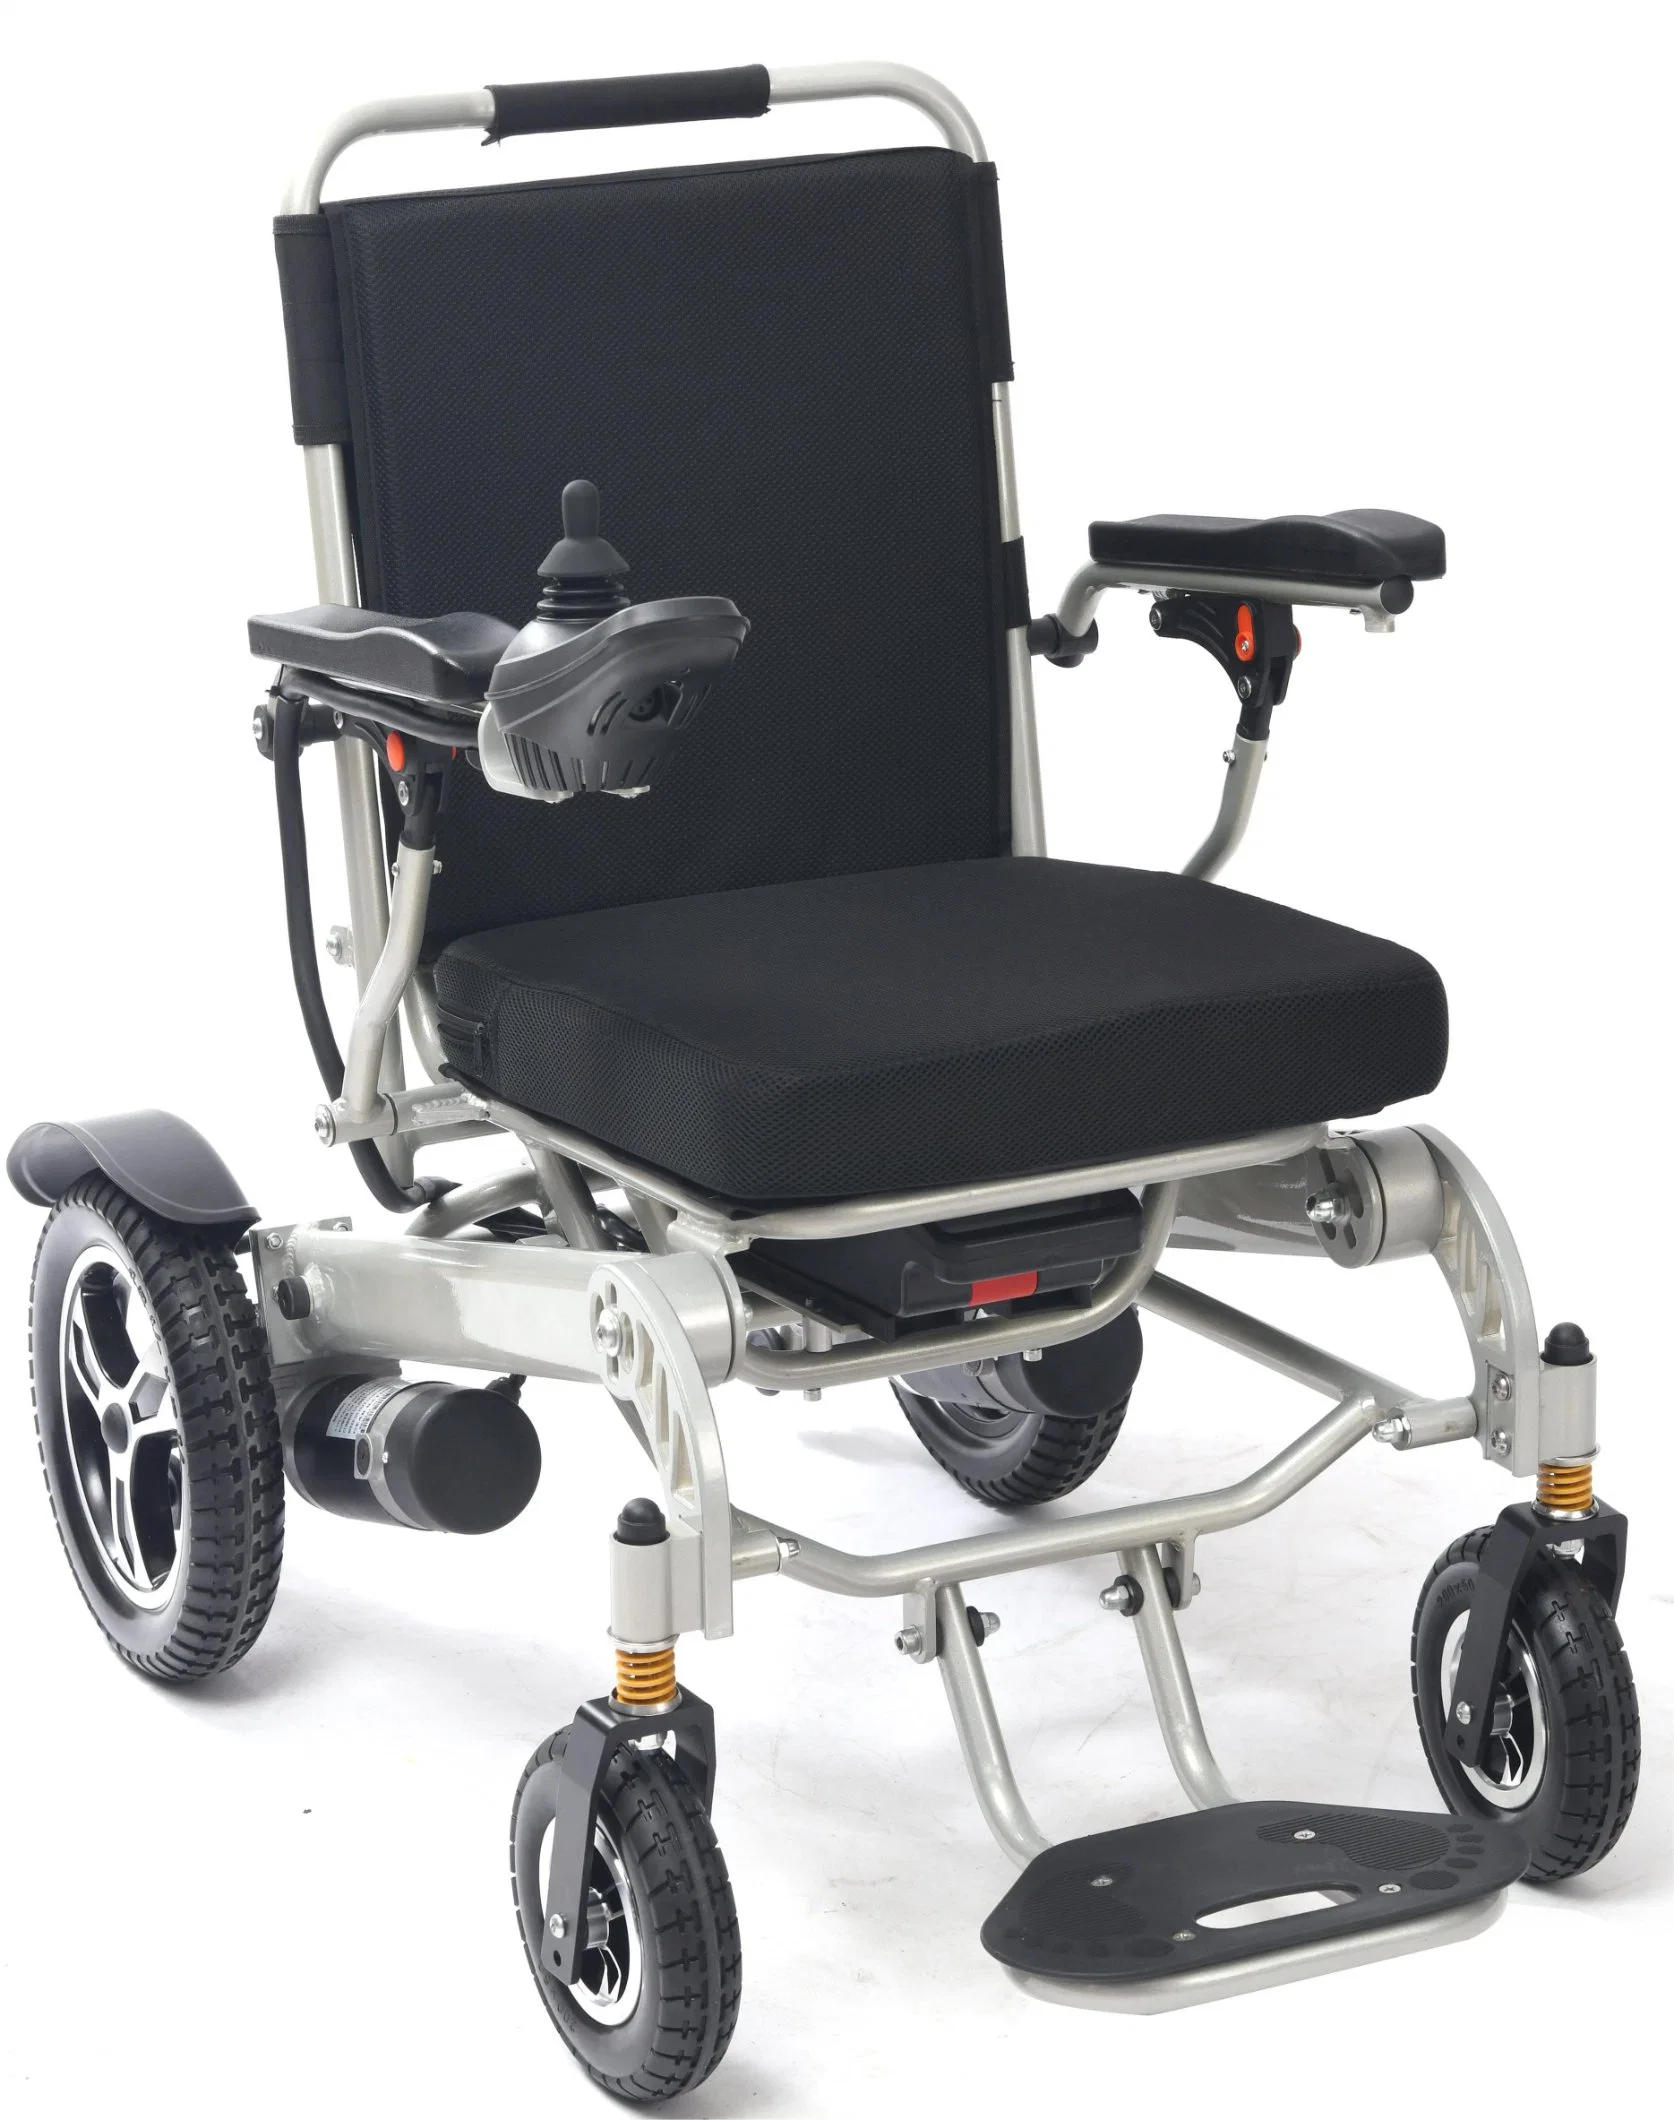 Hot Sale Nuevo Precio aprobado ISO Lightweight Wheel Chair Health Productos de cuidado silla de ruedas eléctrica